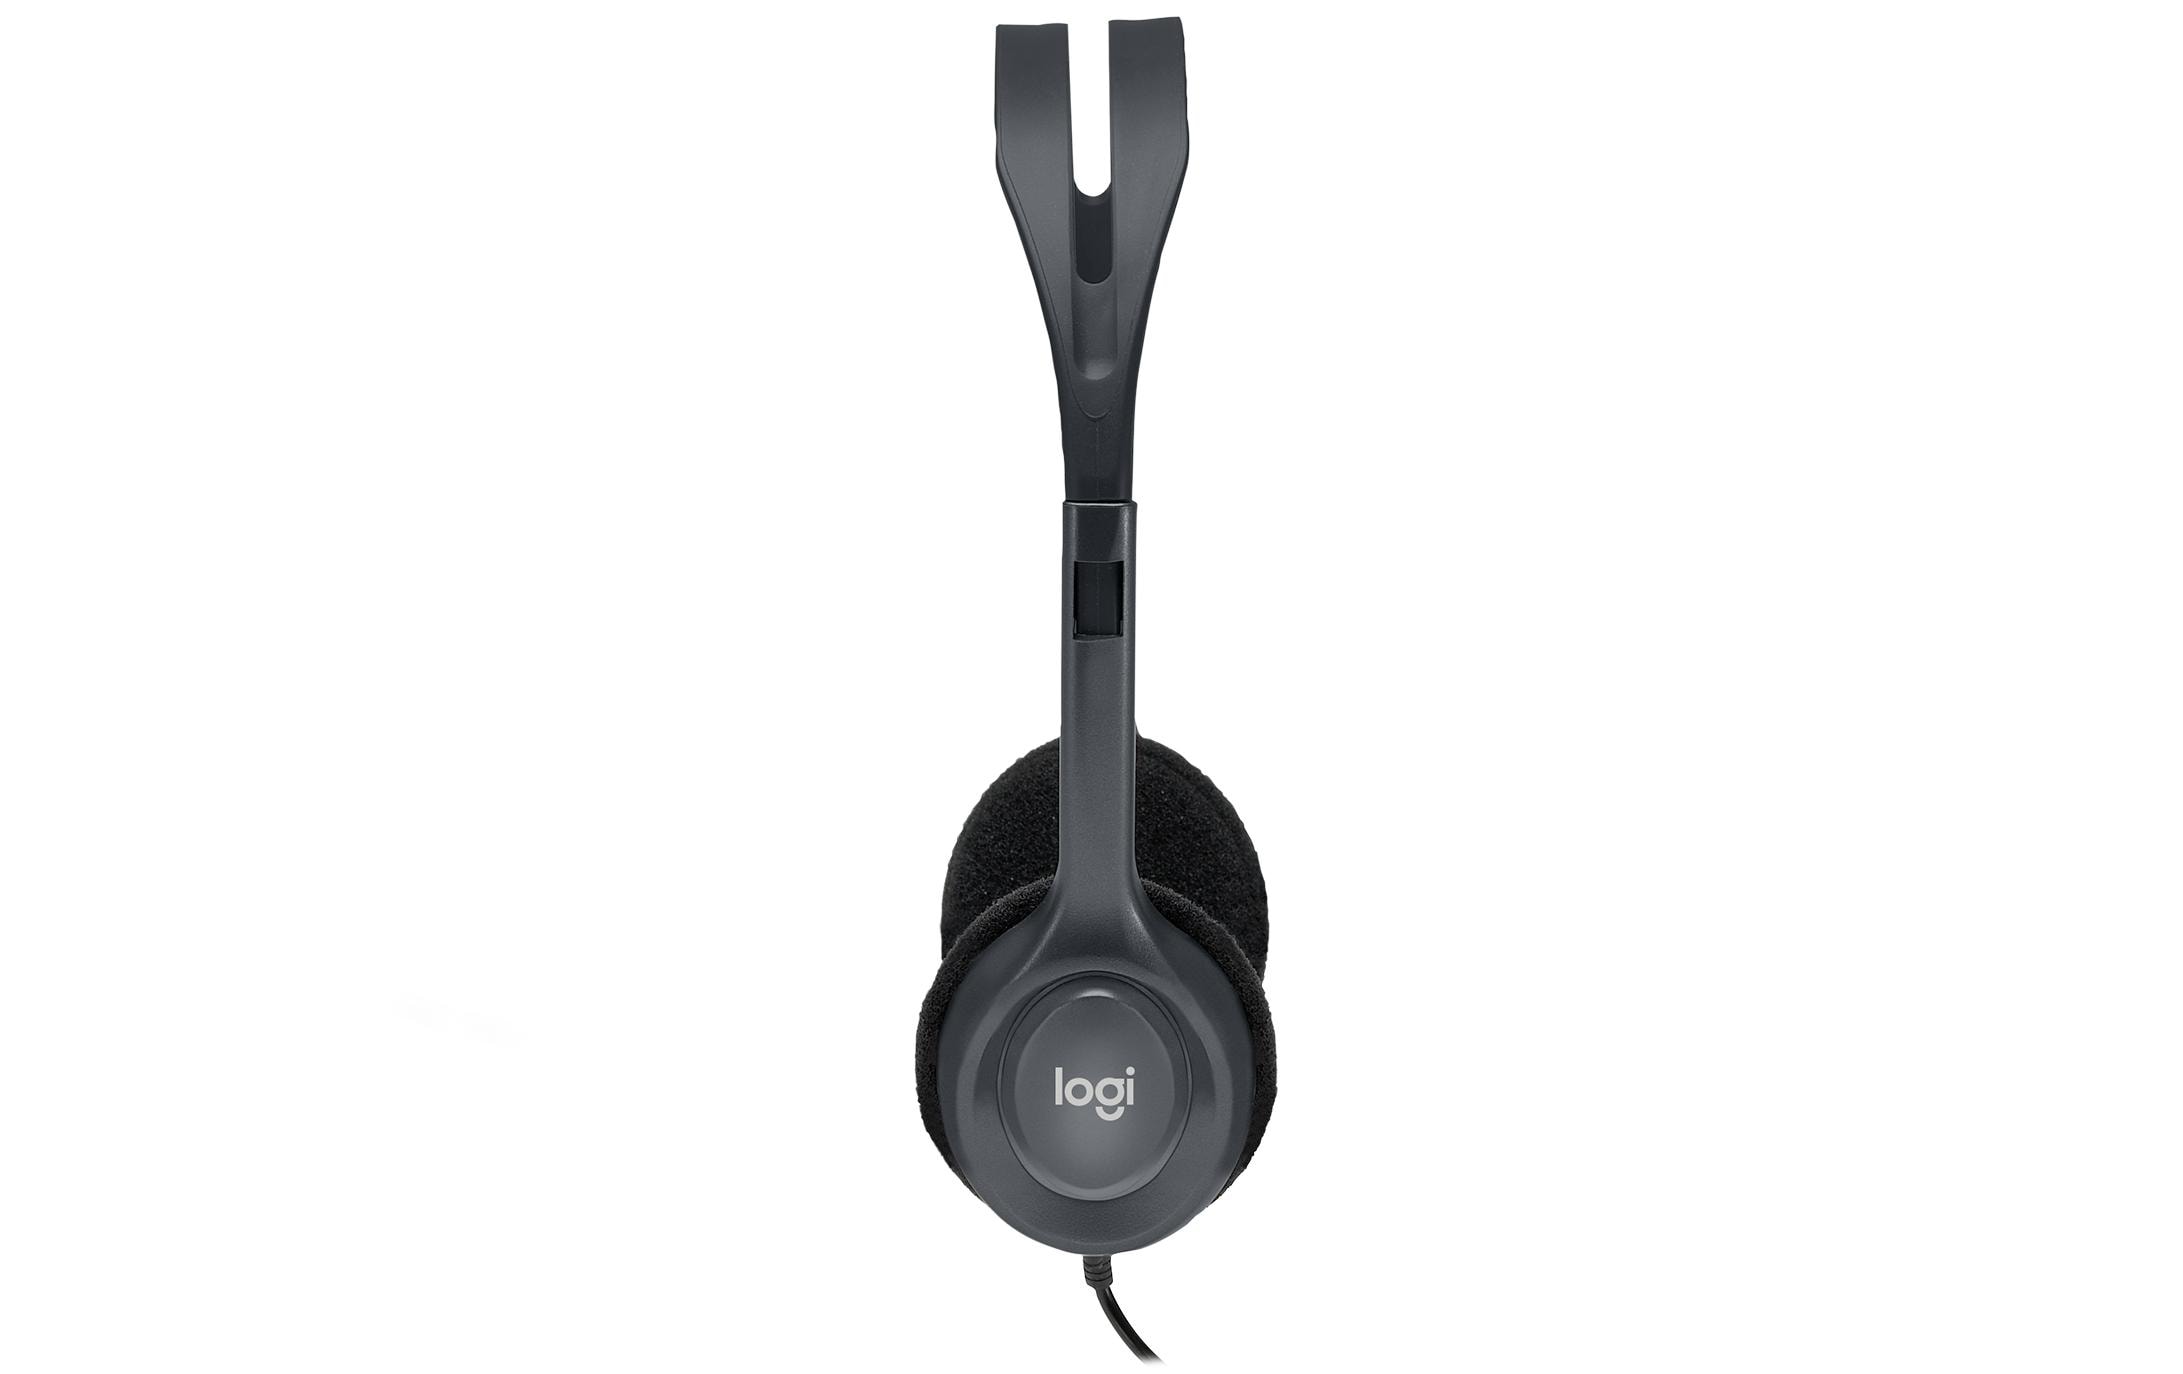 Logitech Headset H111 Stereo Bulk